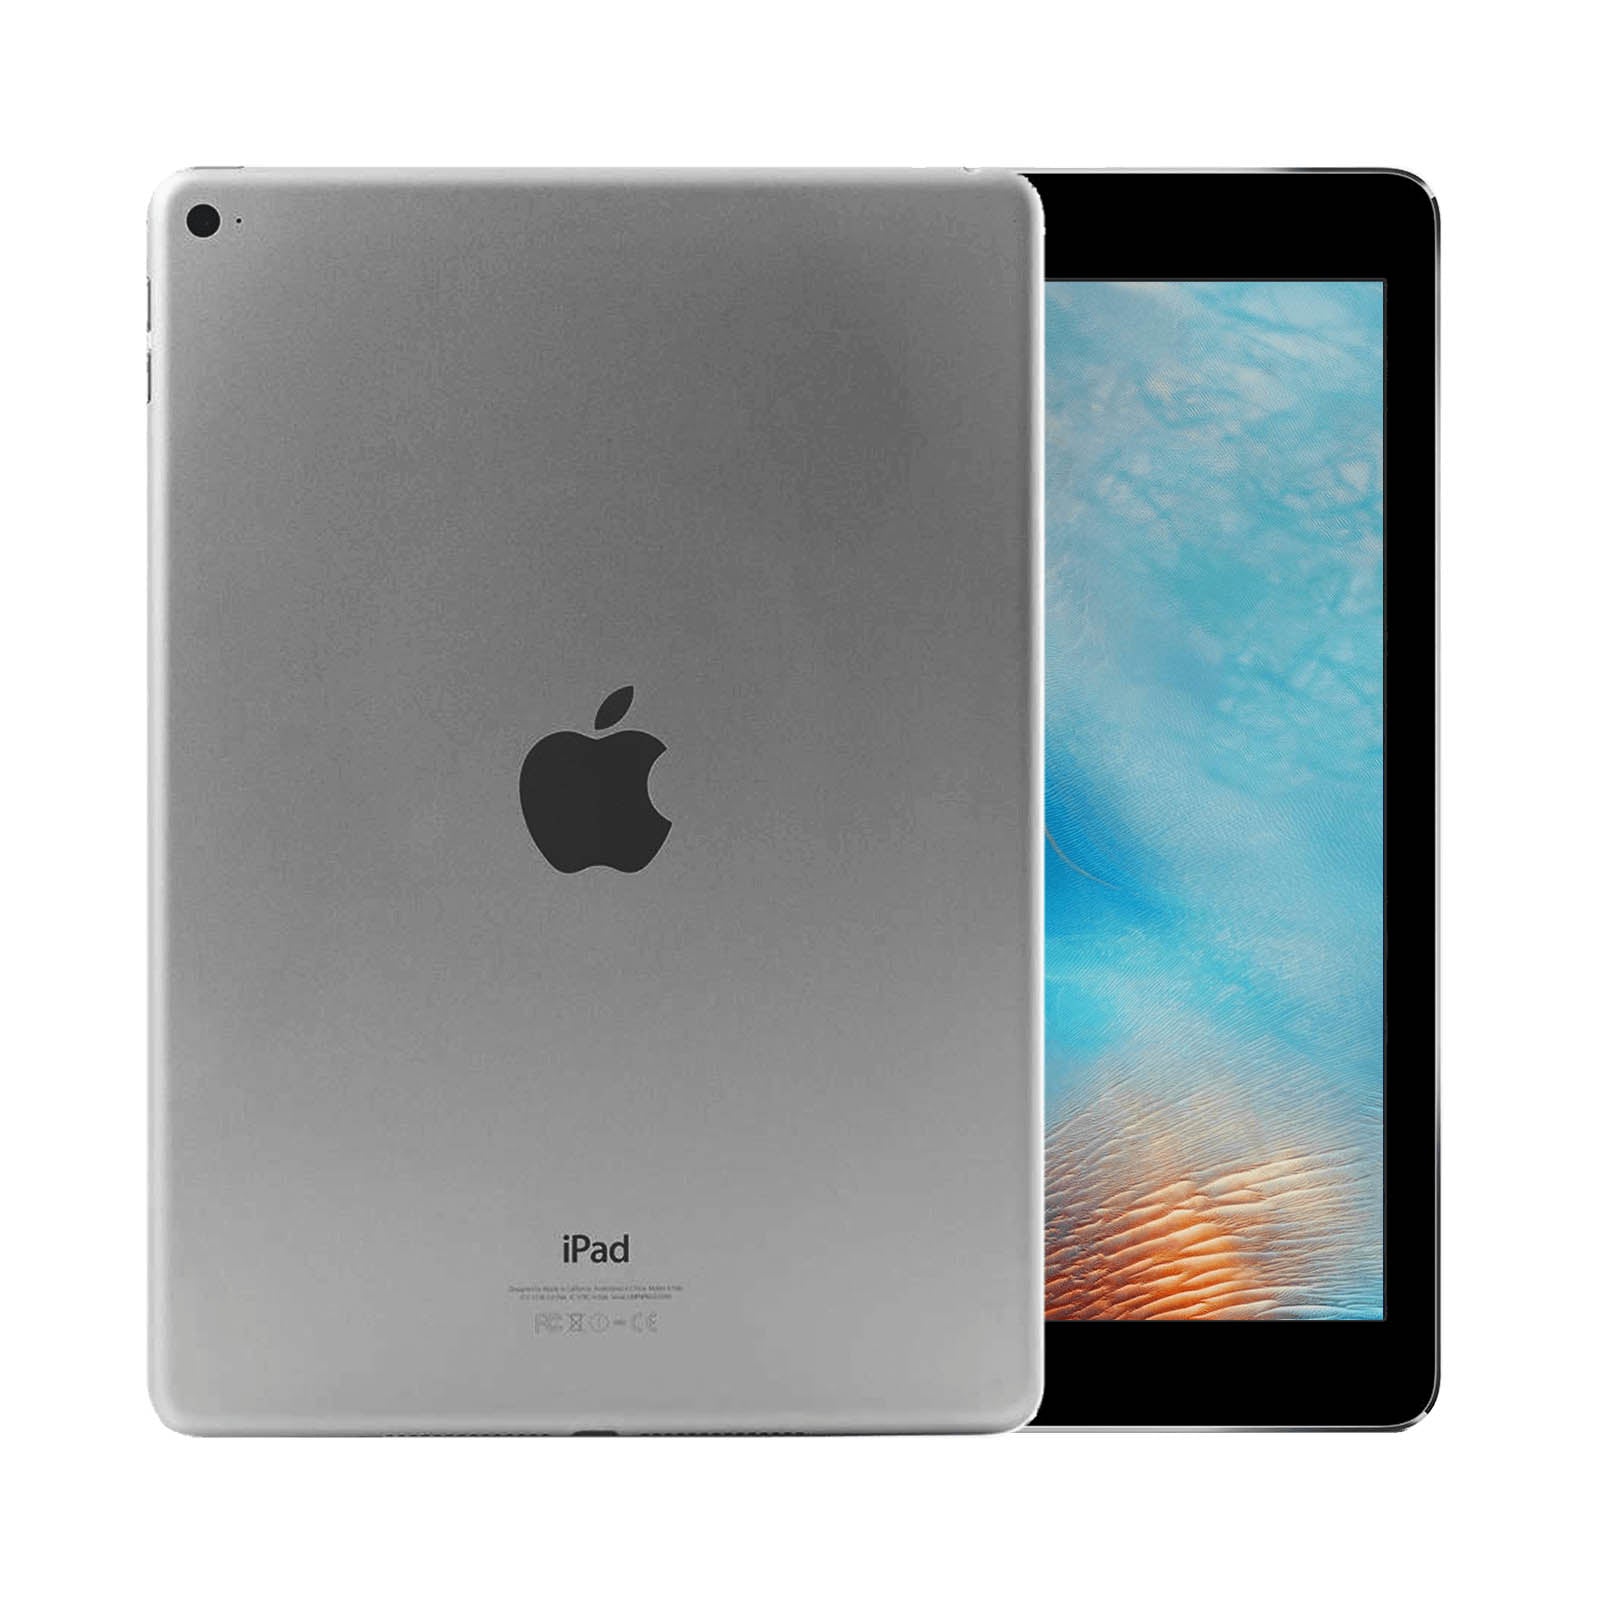 Apple iPad Air 2 128GB Space Grey Fair - WiFi